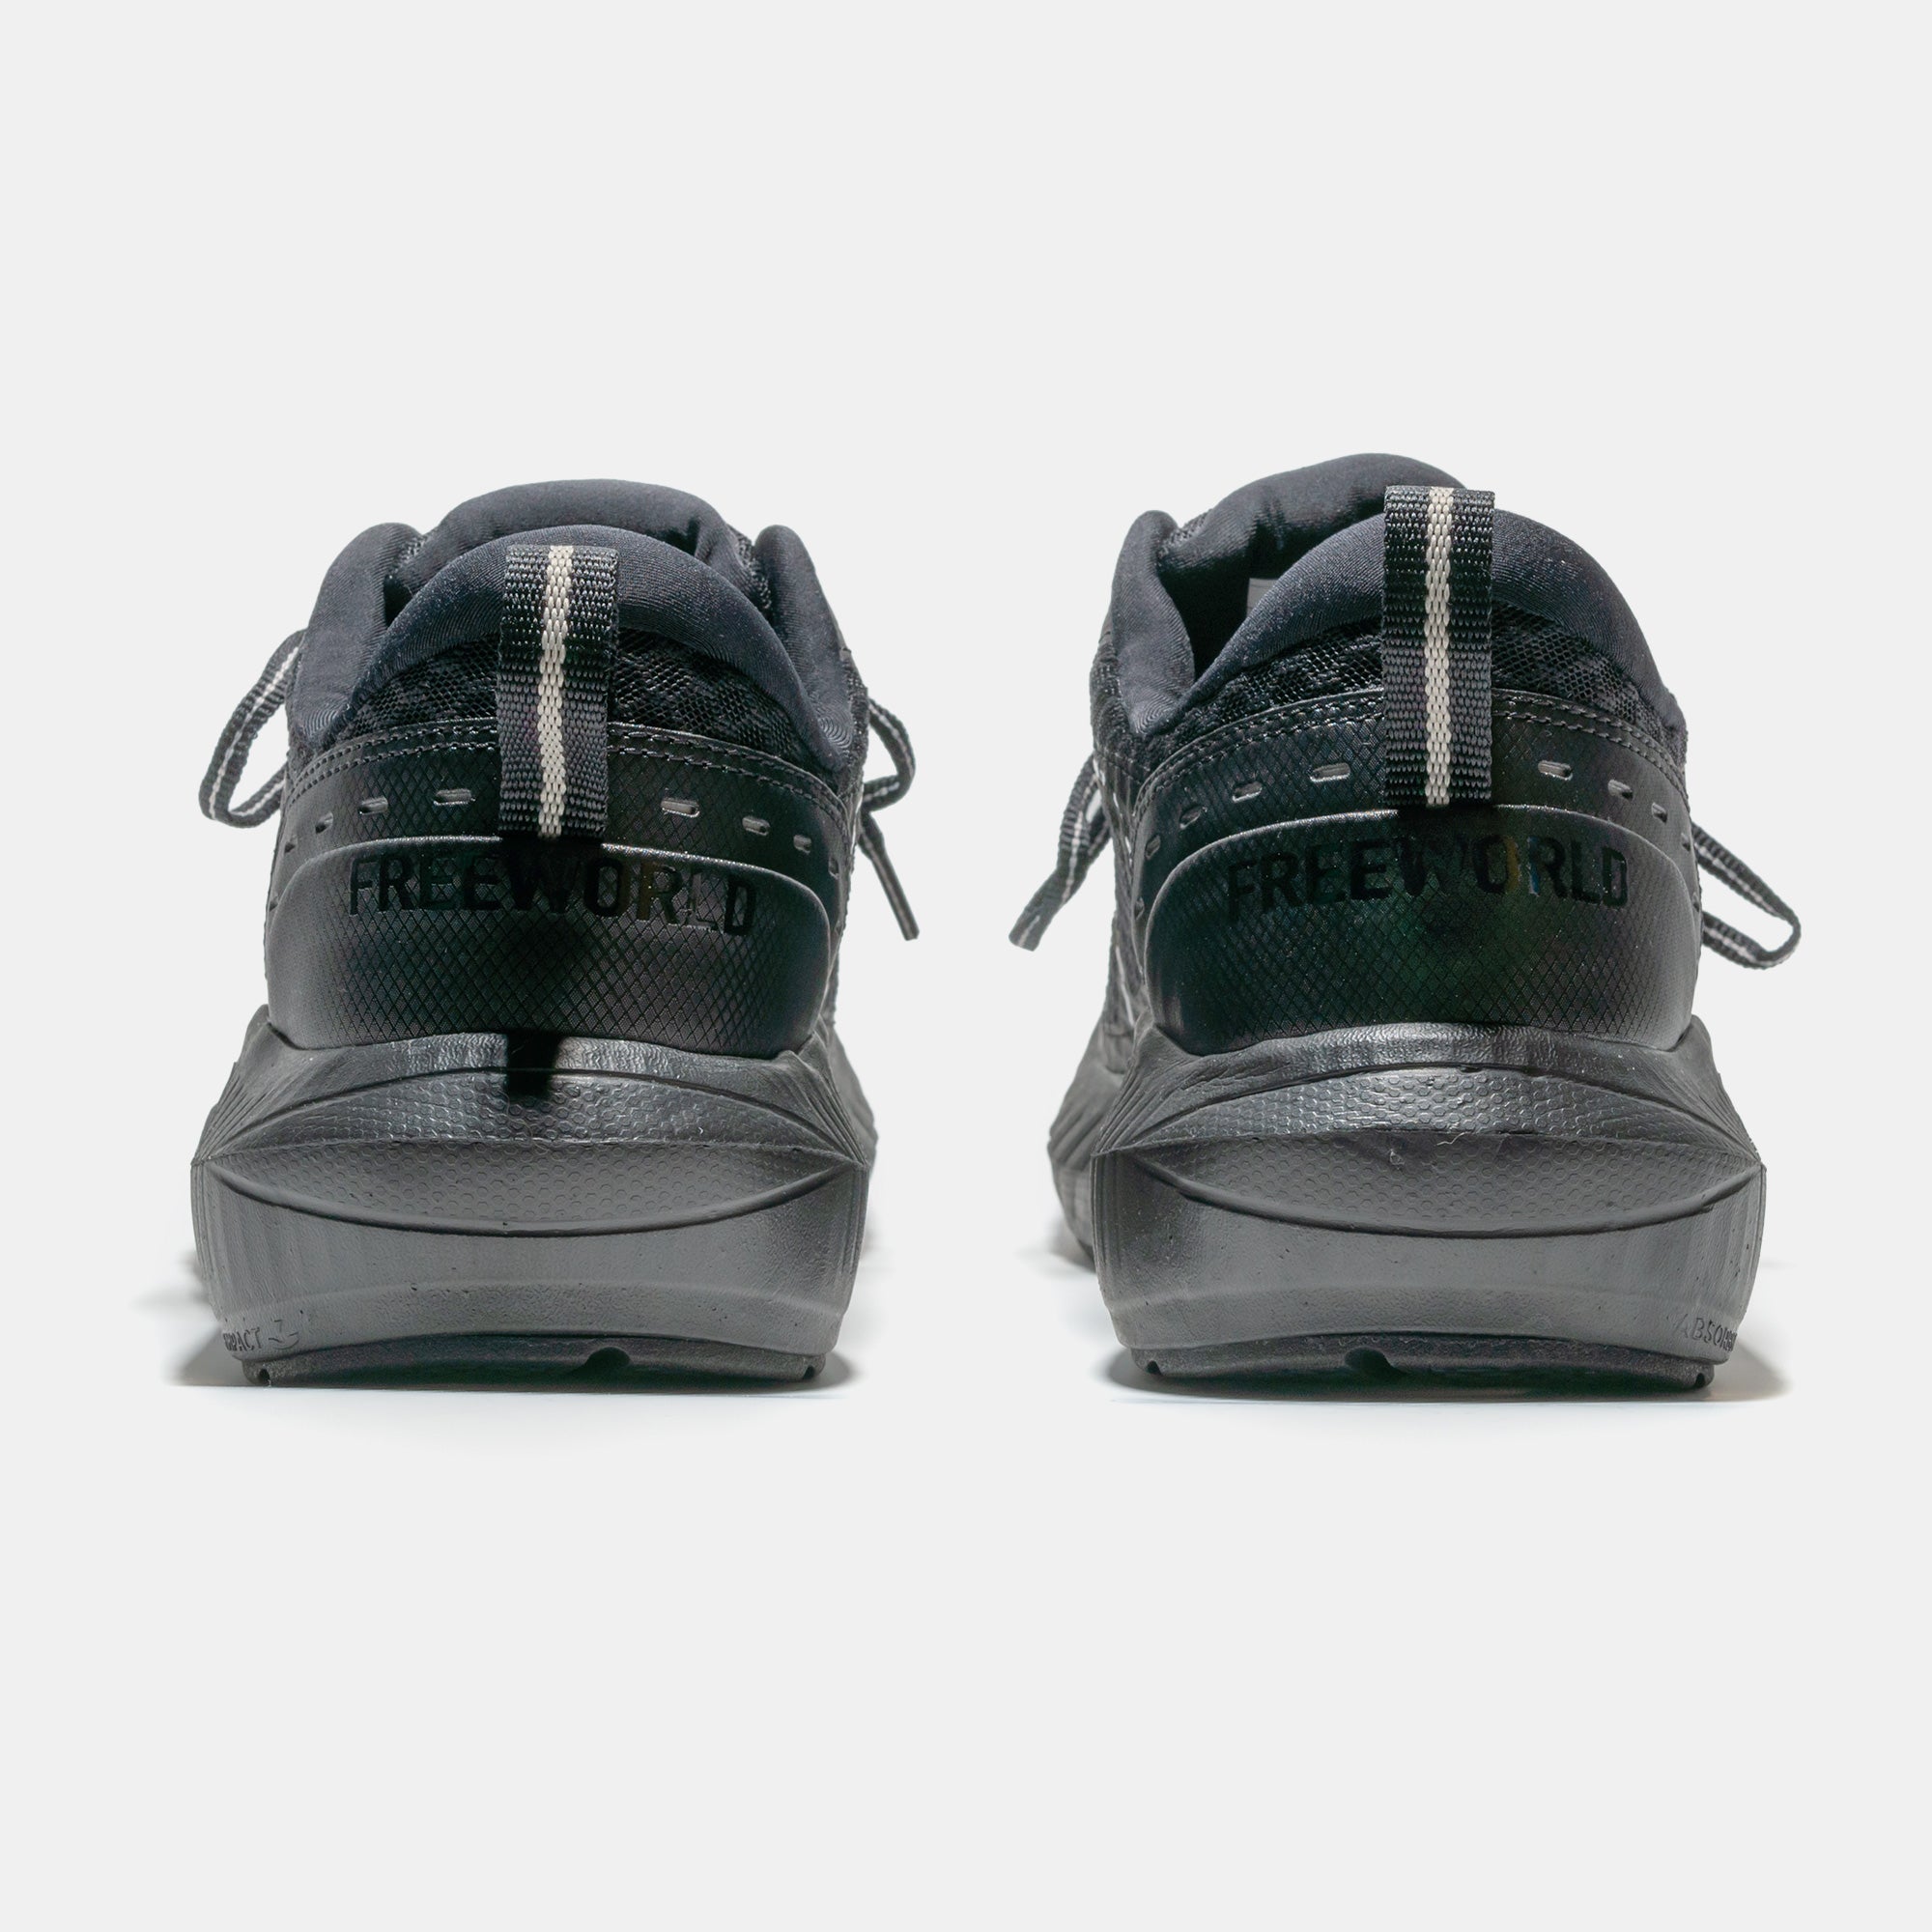 Baywalker Sneaker Walking Shoe - Black